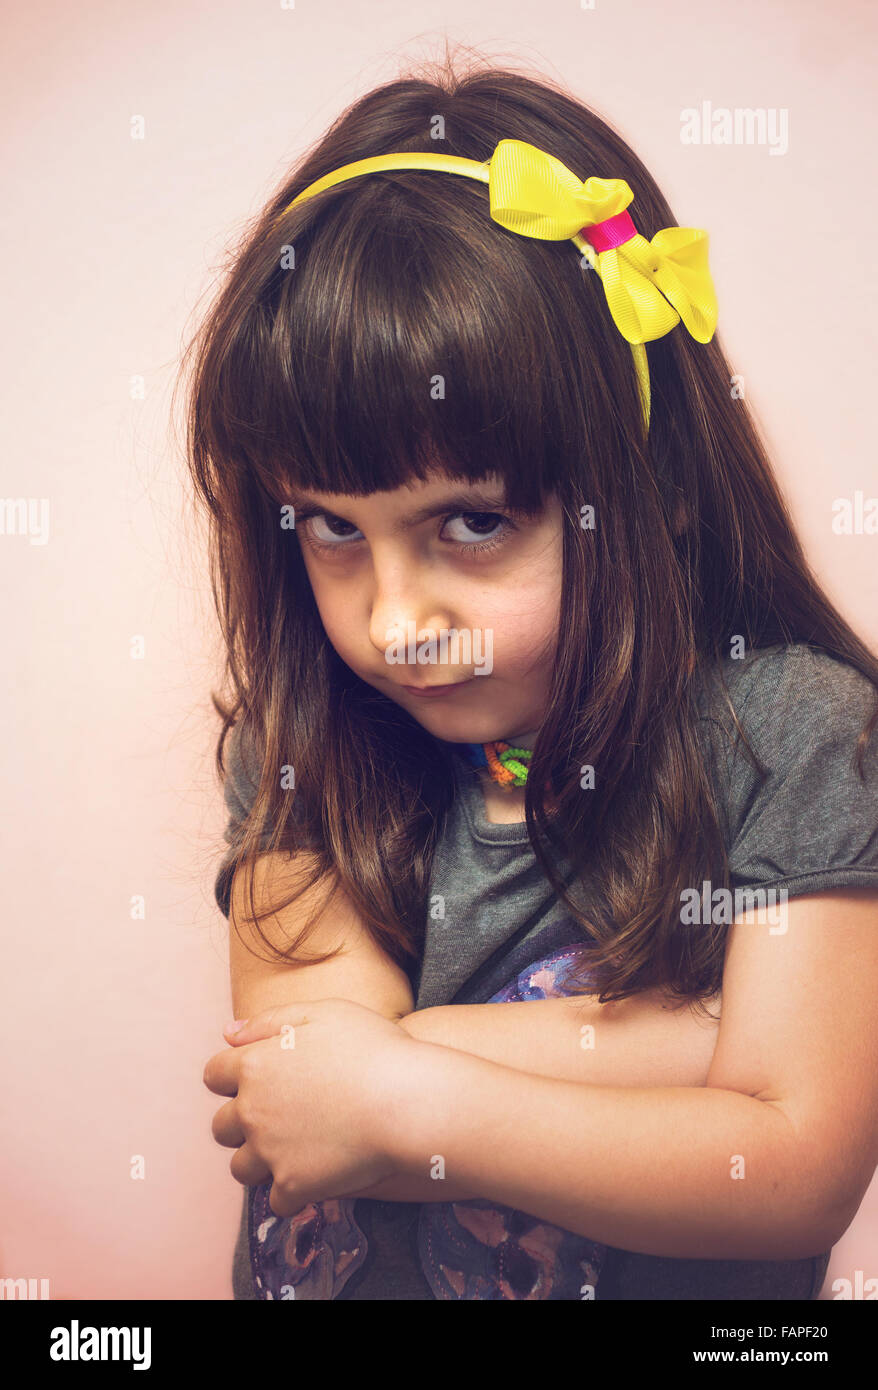 angry little baby girl